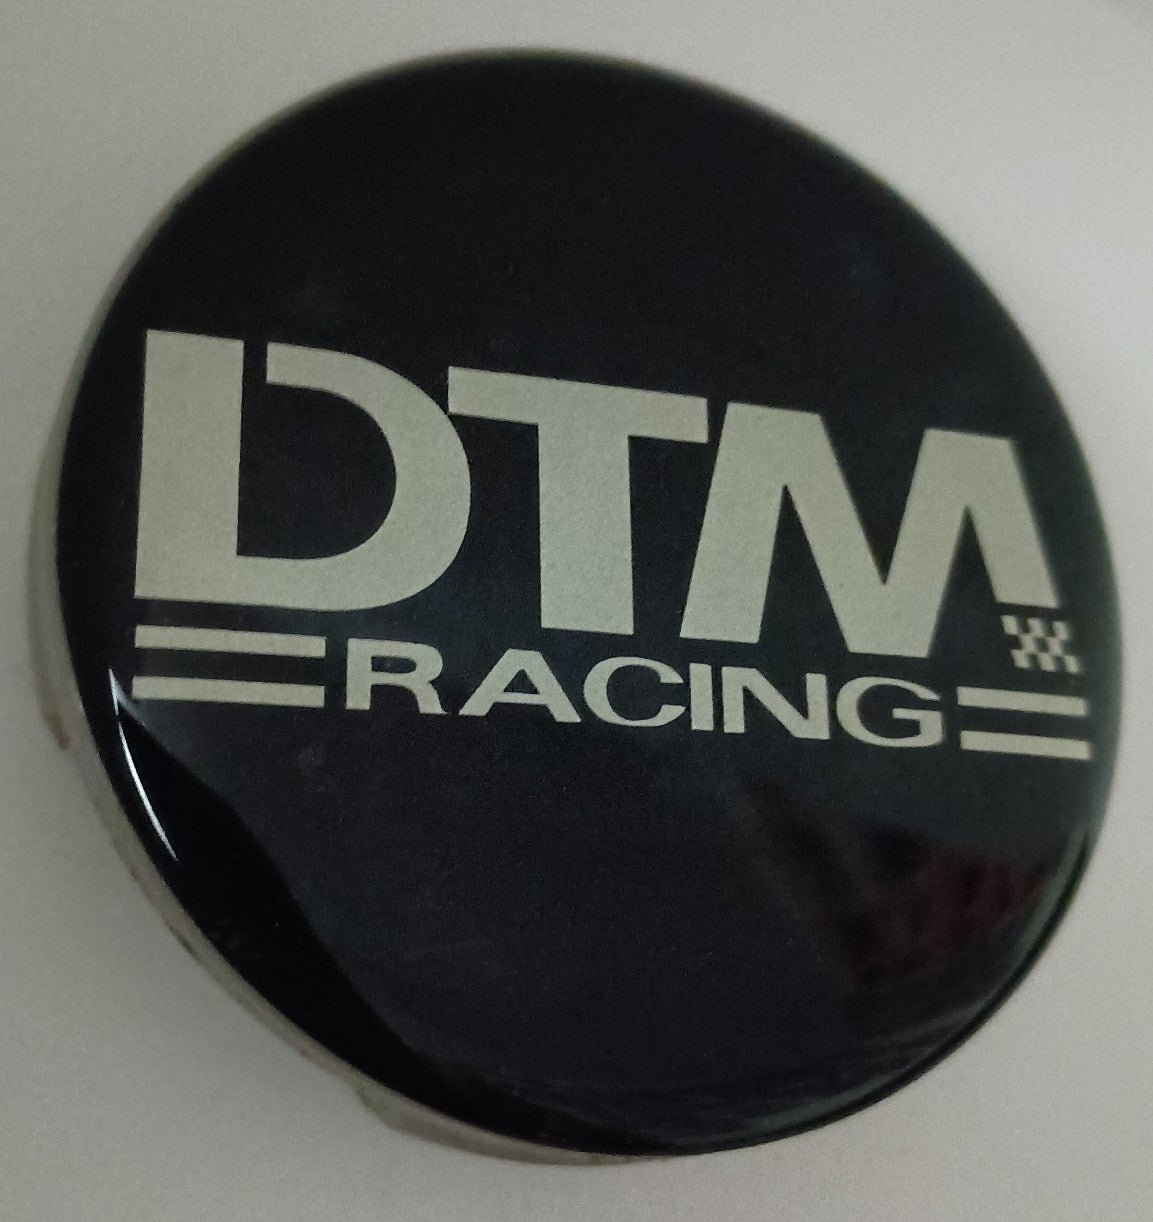 1 DTM racing wheel center cap NEW E2BALomIG